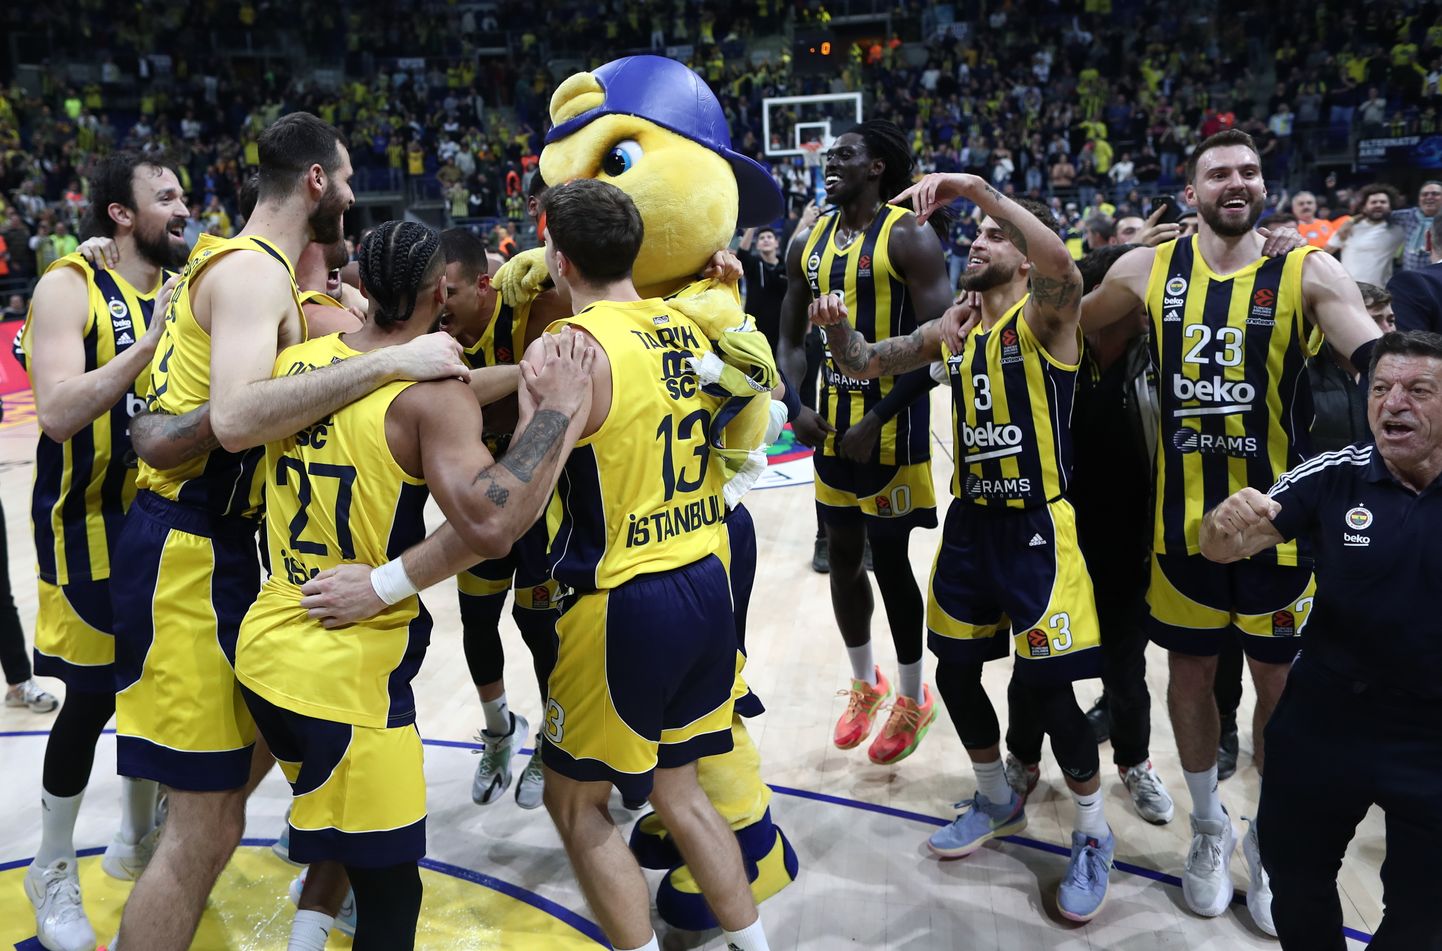 Istanbuli Fenerbahçe pallurid rõõmustamas pärast Madridi Reali alistamist. 99:100 kaotus oli Realile esimeseks sel Euroliiga hooajal.